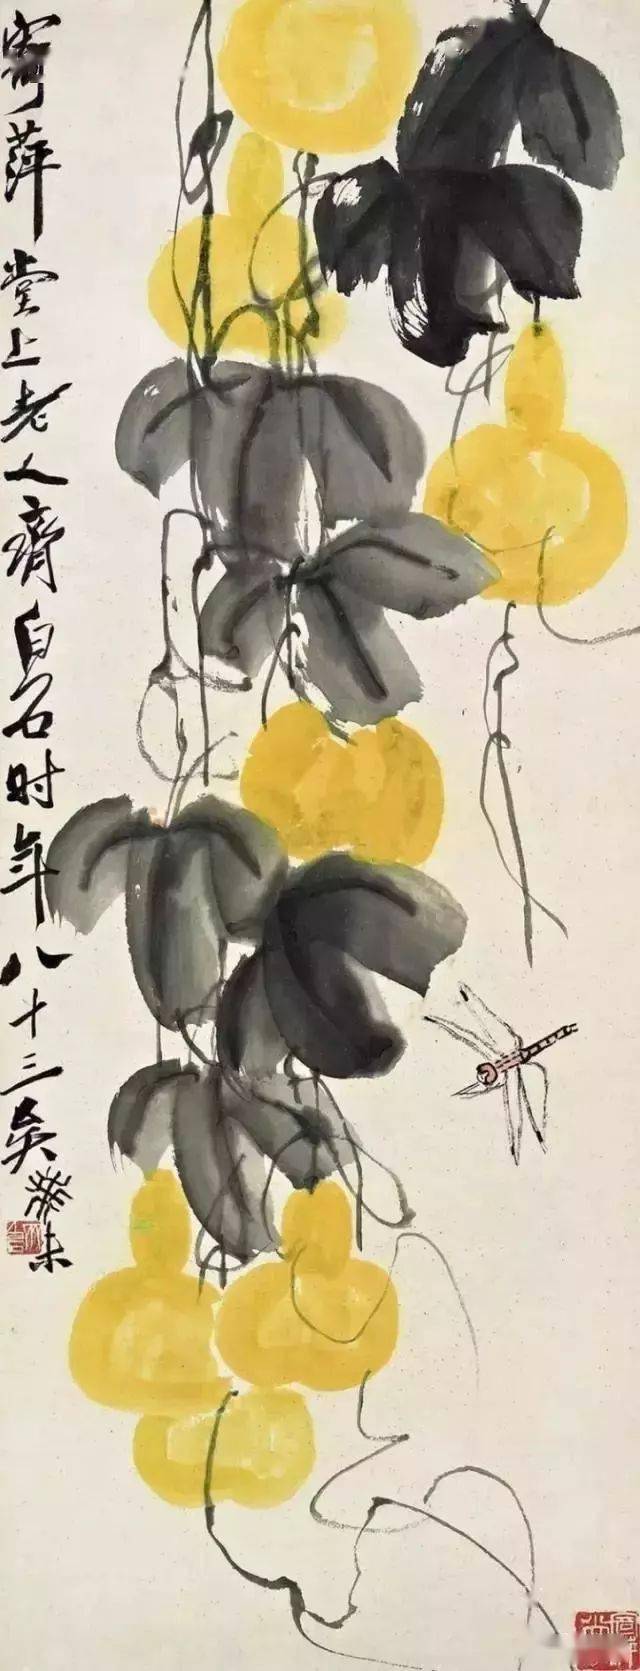 100幅名家中国国画作品葫芦图祝您福禄双收